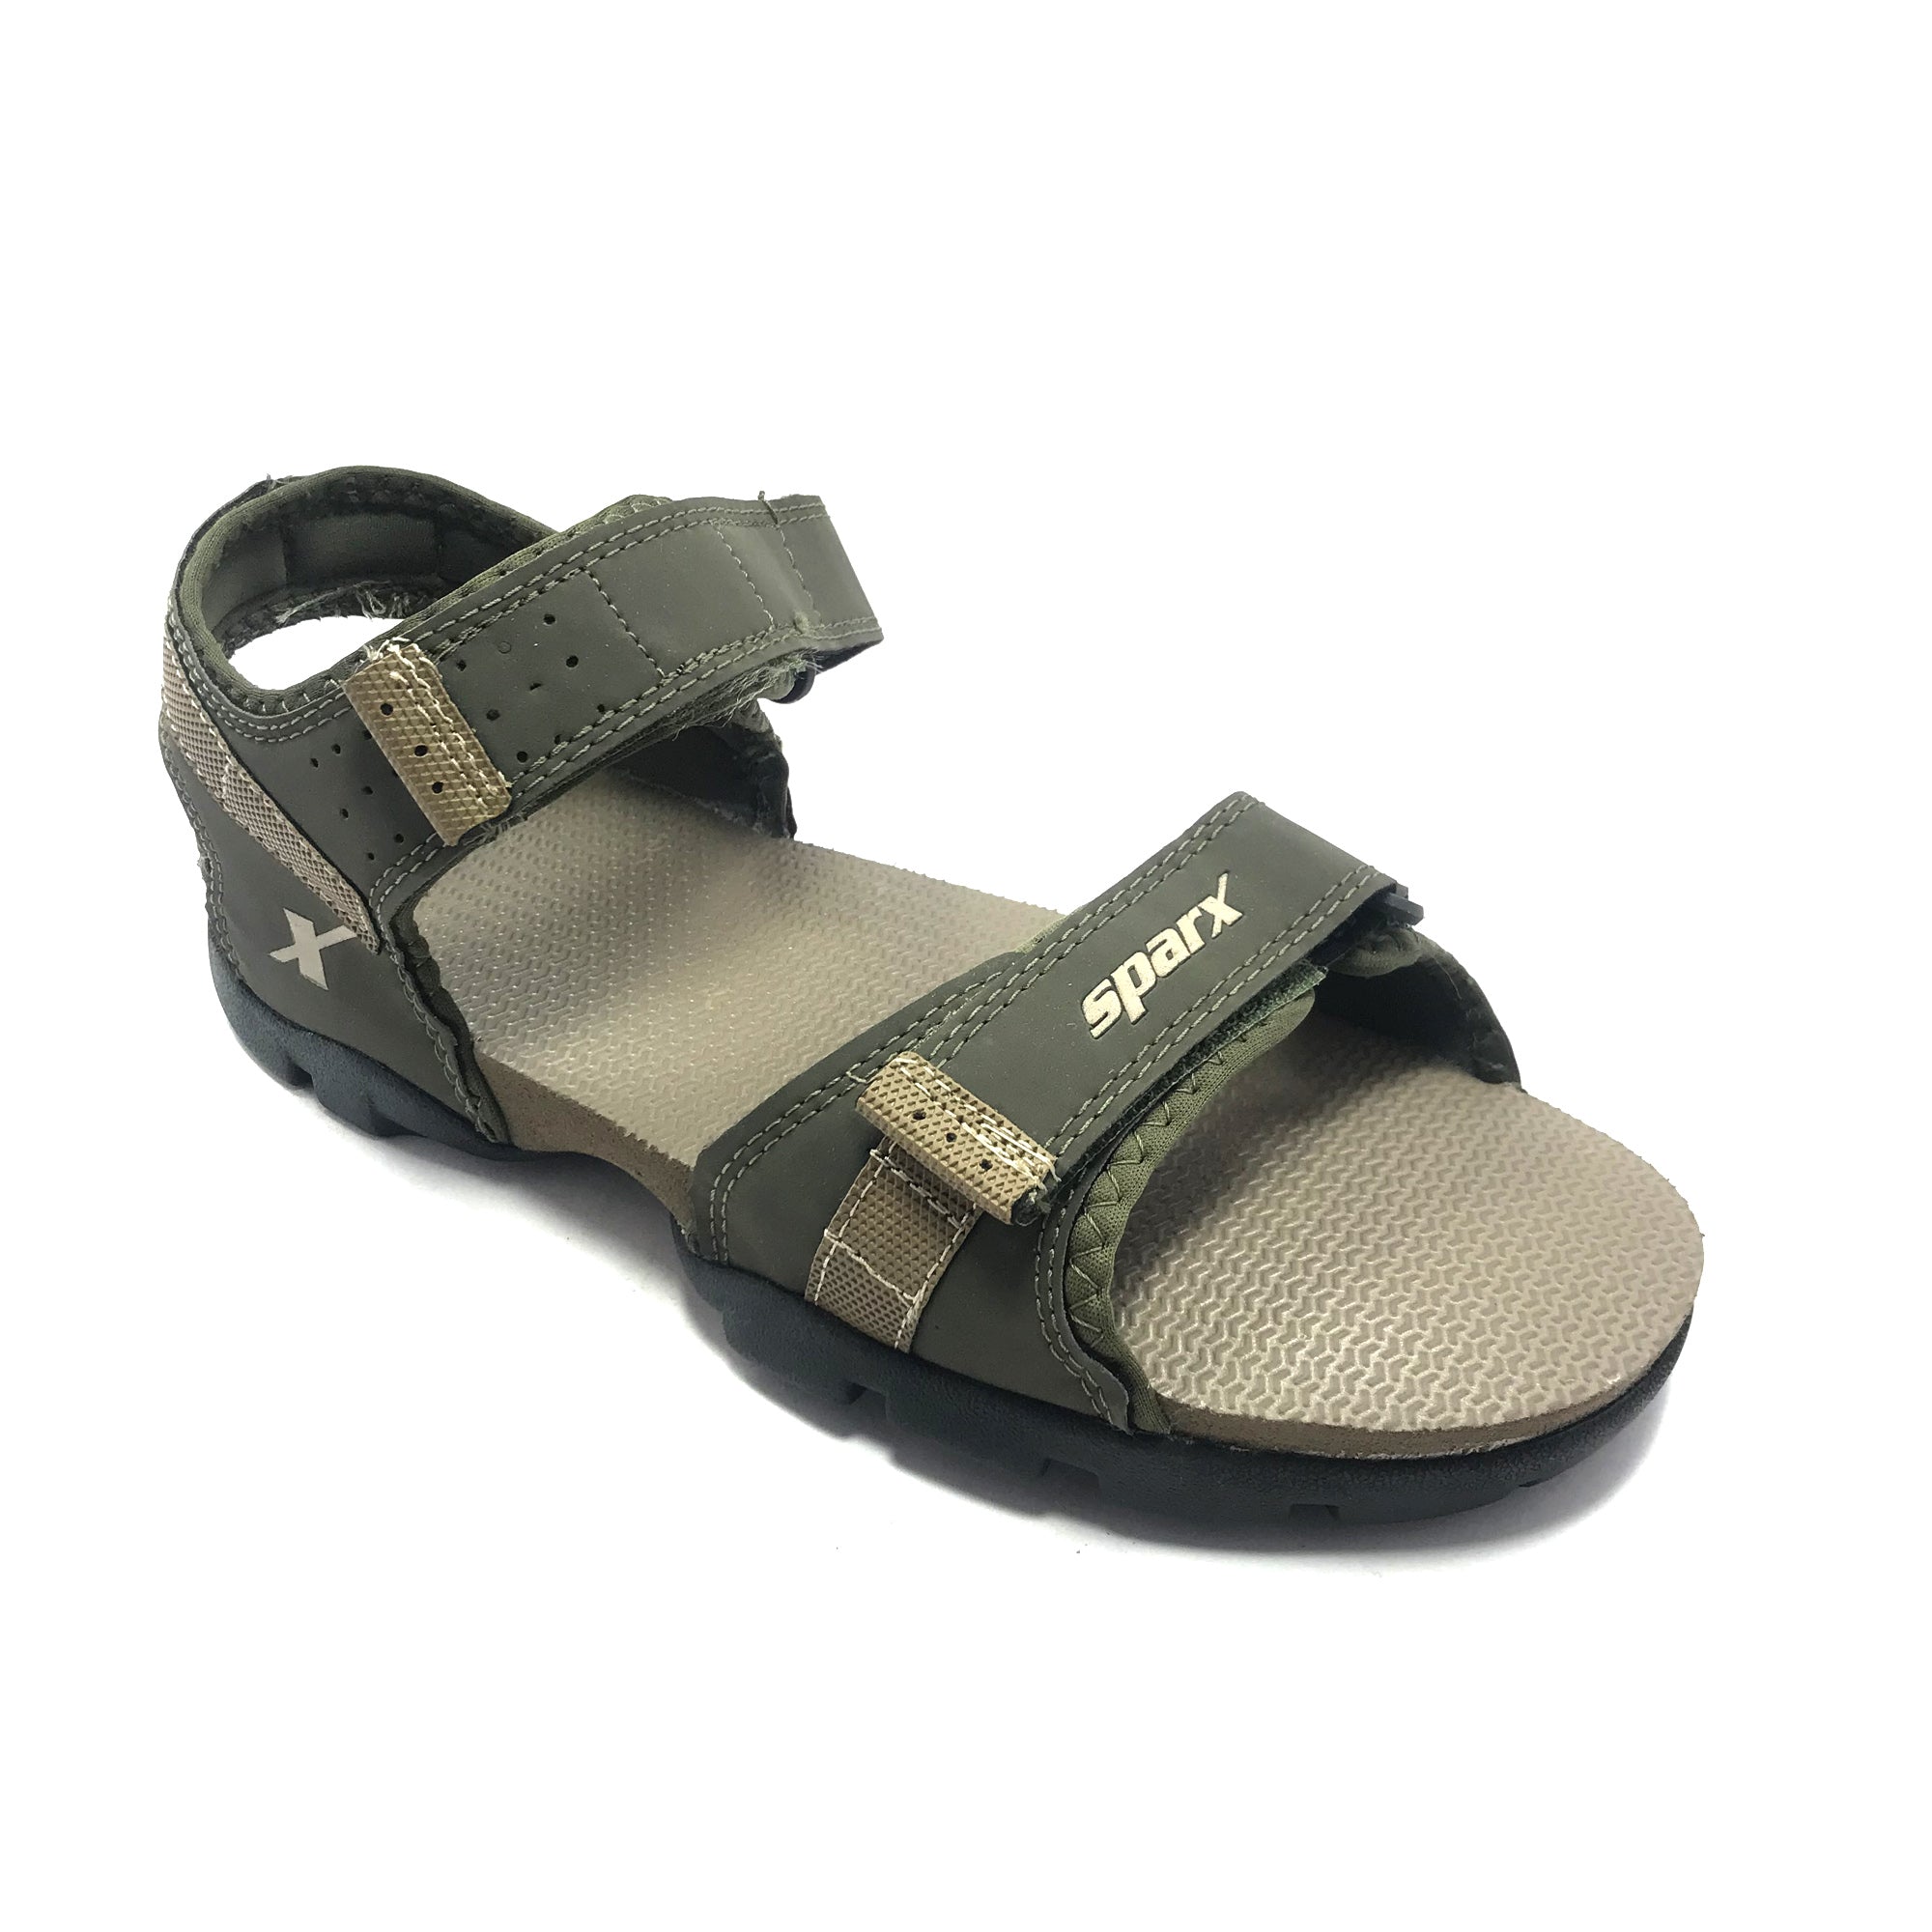 Sparx Men Tan Sandals - Buy Camel Color Sparx Men Tan Sandals Online at  Best Price - Shop Online for Footwears in India | Flipkart.com